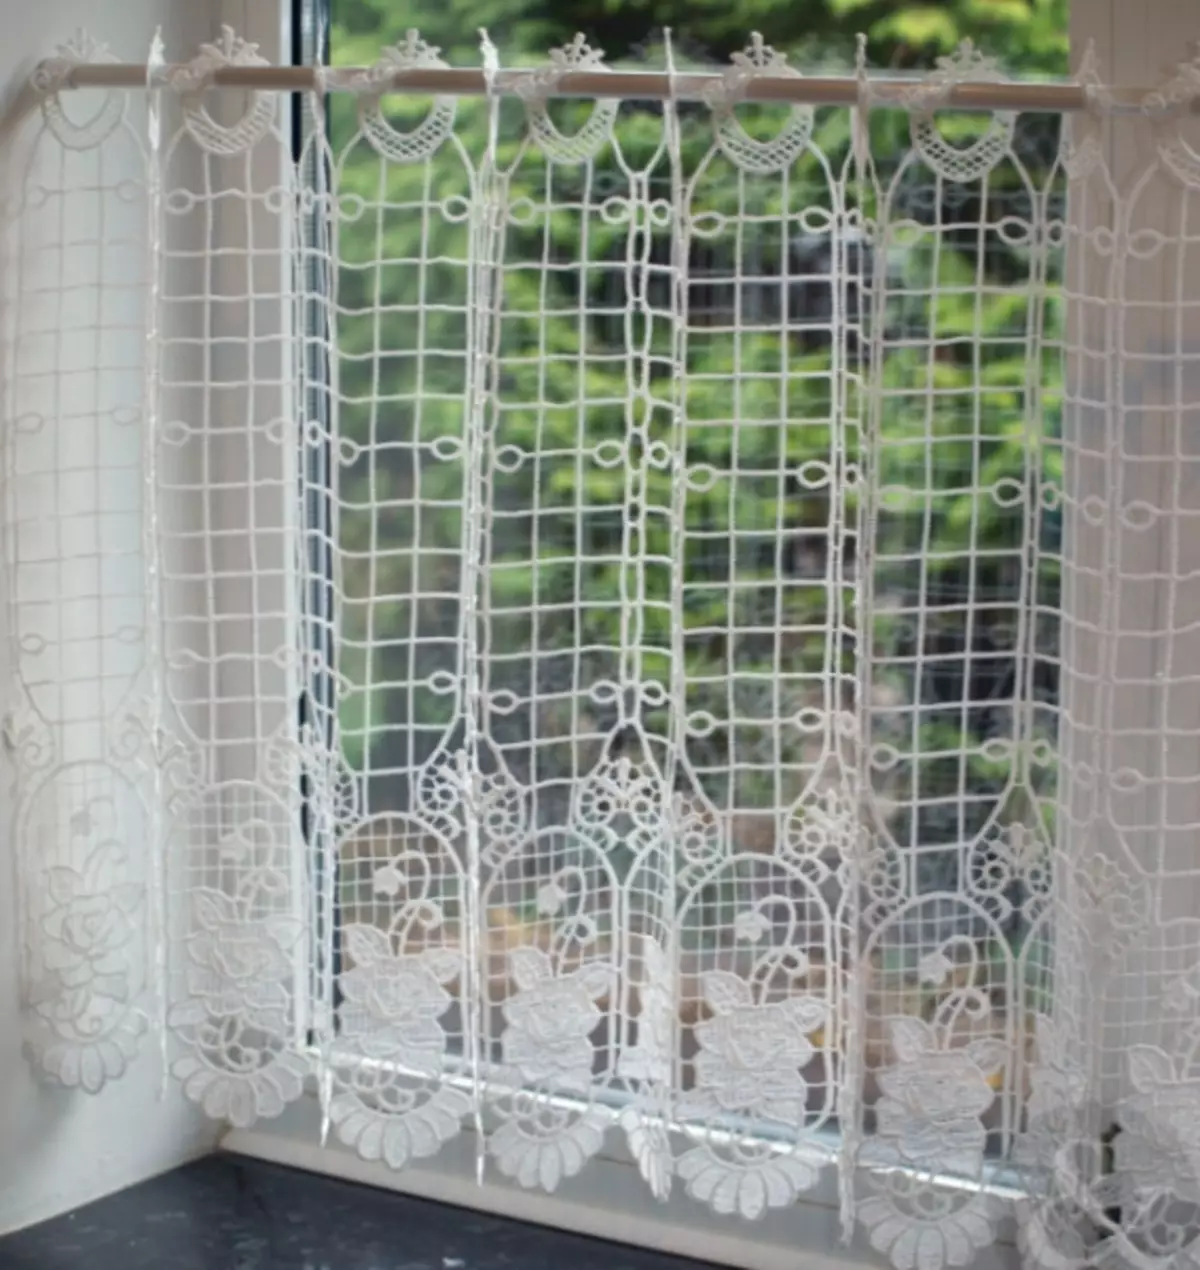 Rideau en osier sur la porte de fil de soie - c'est très beau et inhabituel